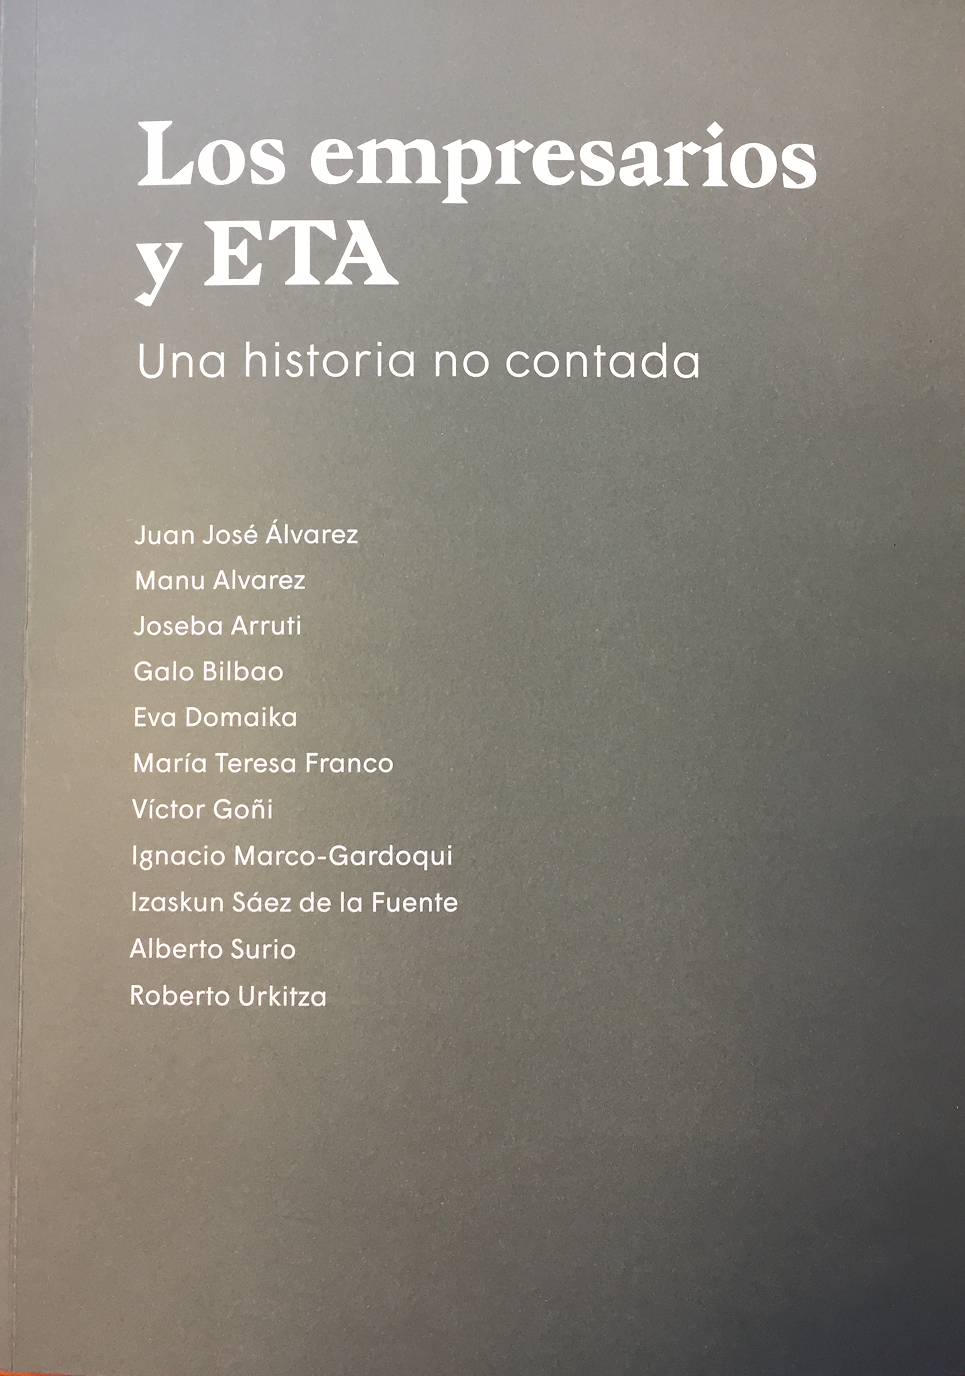 Imagen de portada del libro Los empresarios y ETA